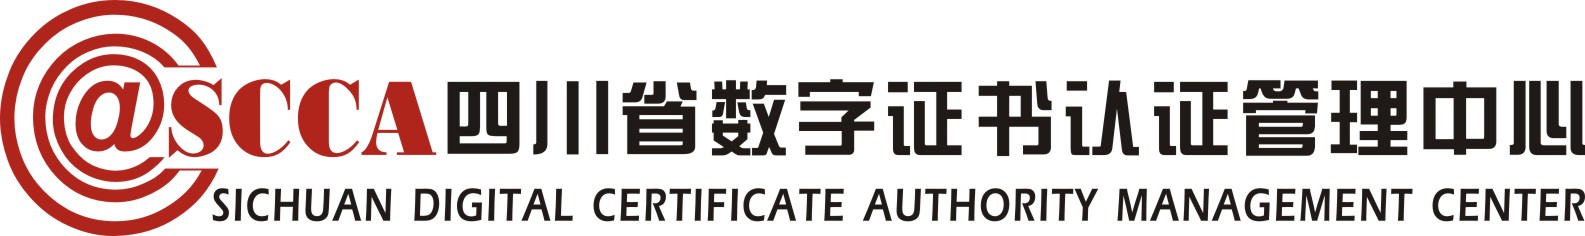 四川省數字證書認證管理中心